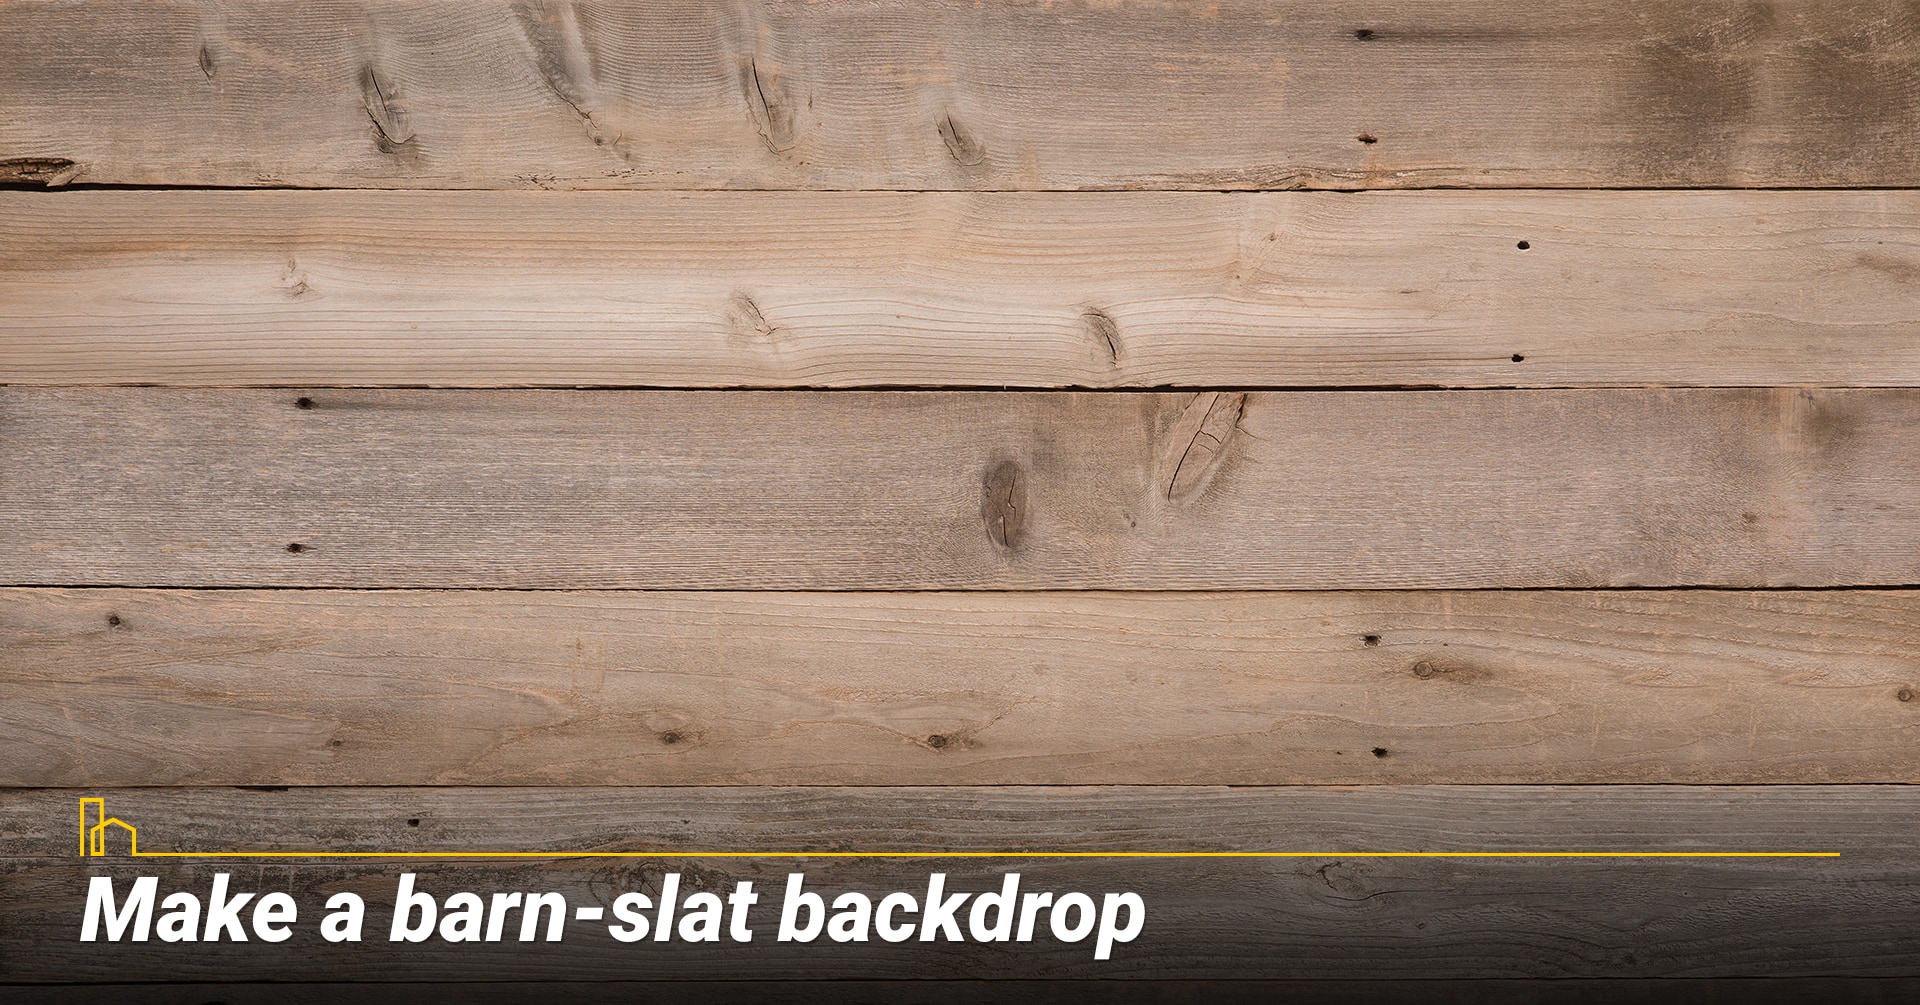 Make a barn-slat backdrop